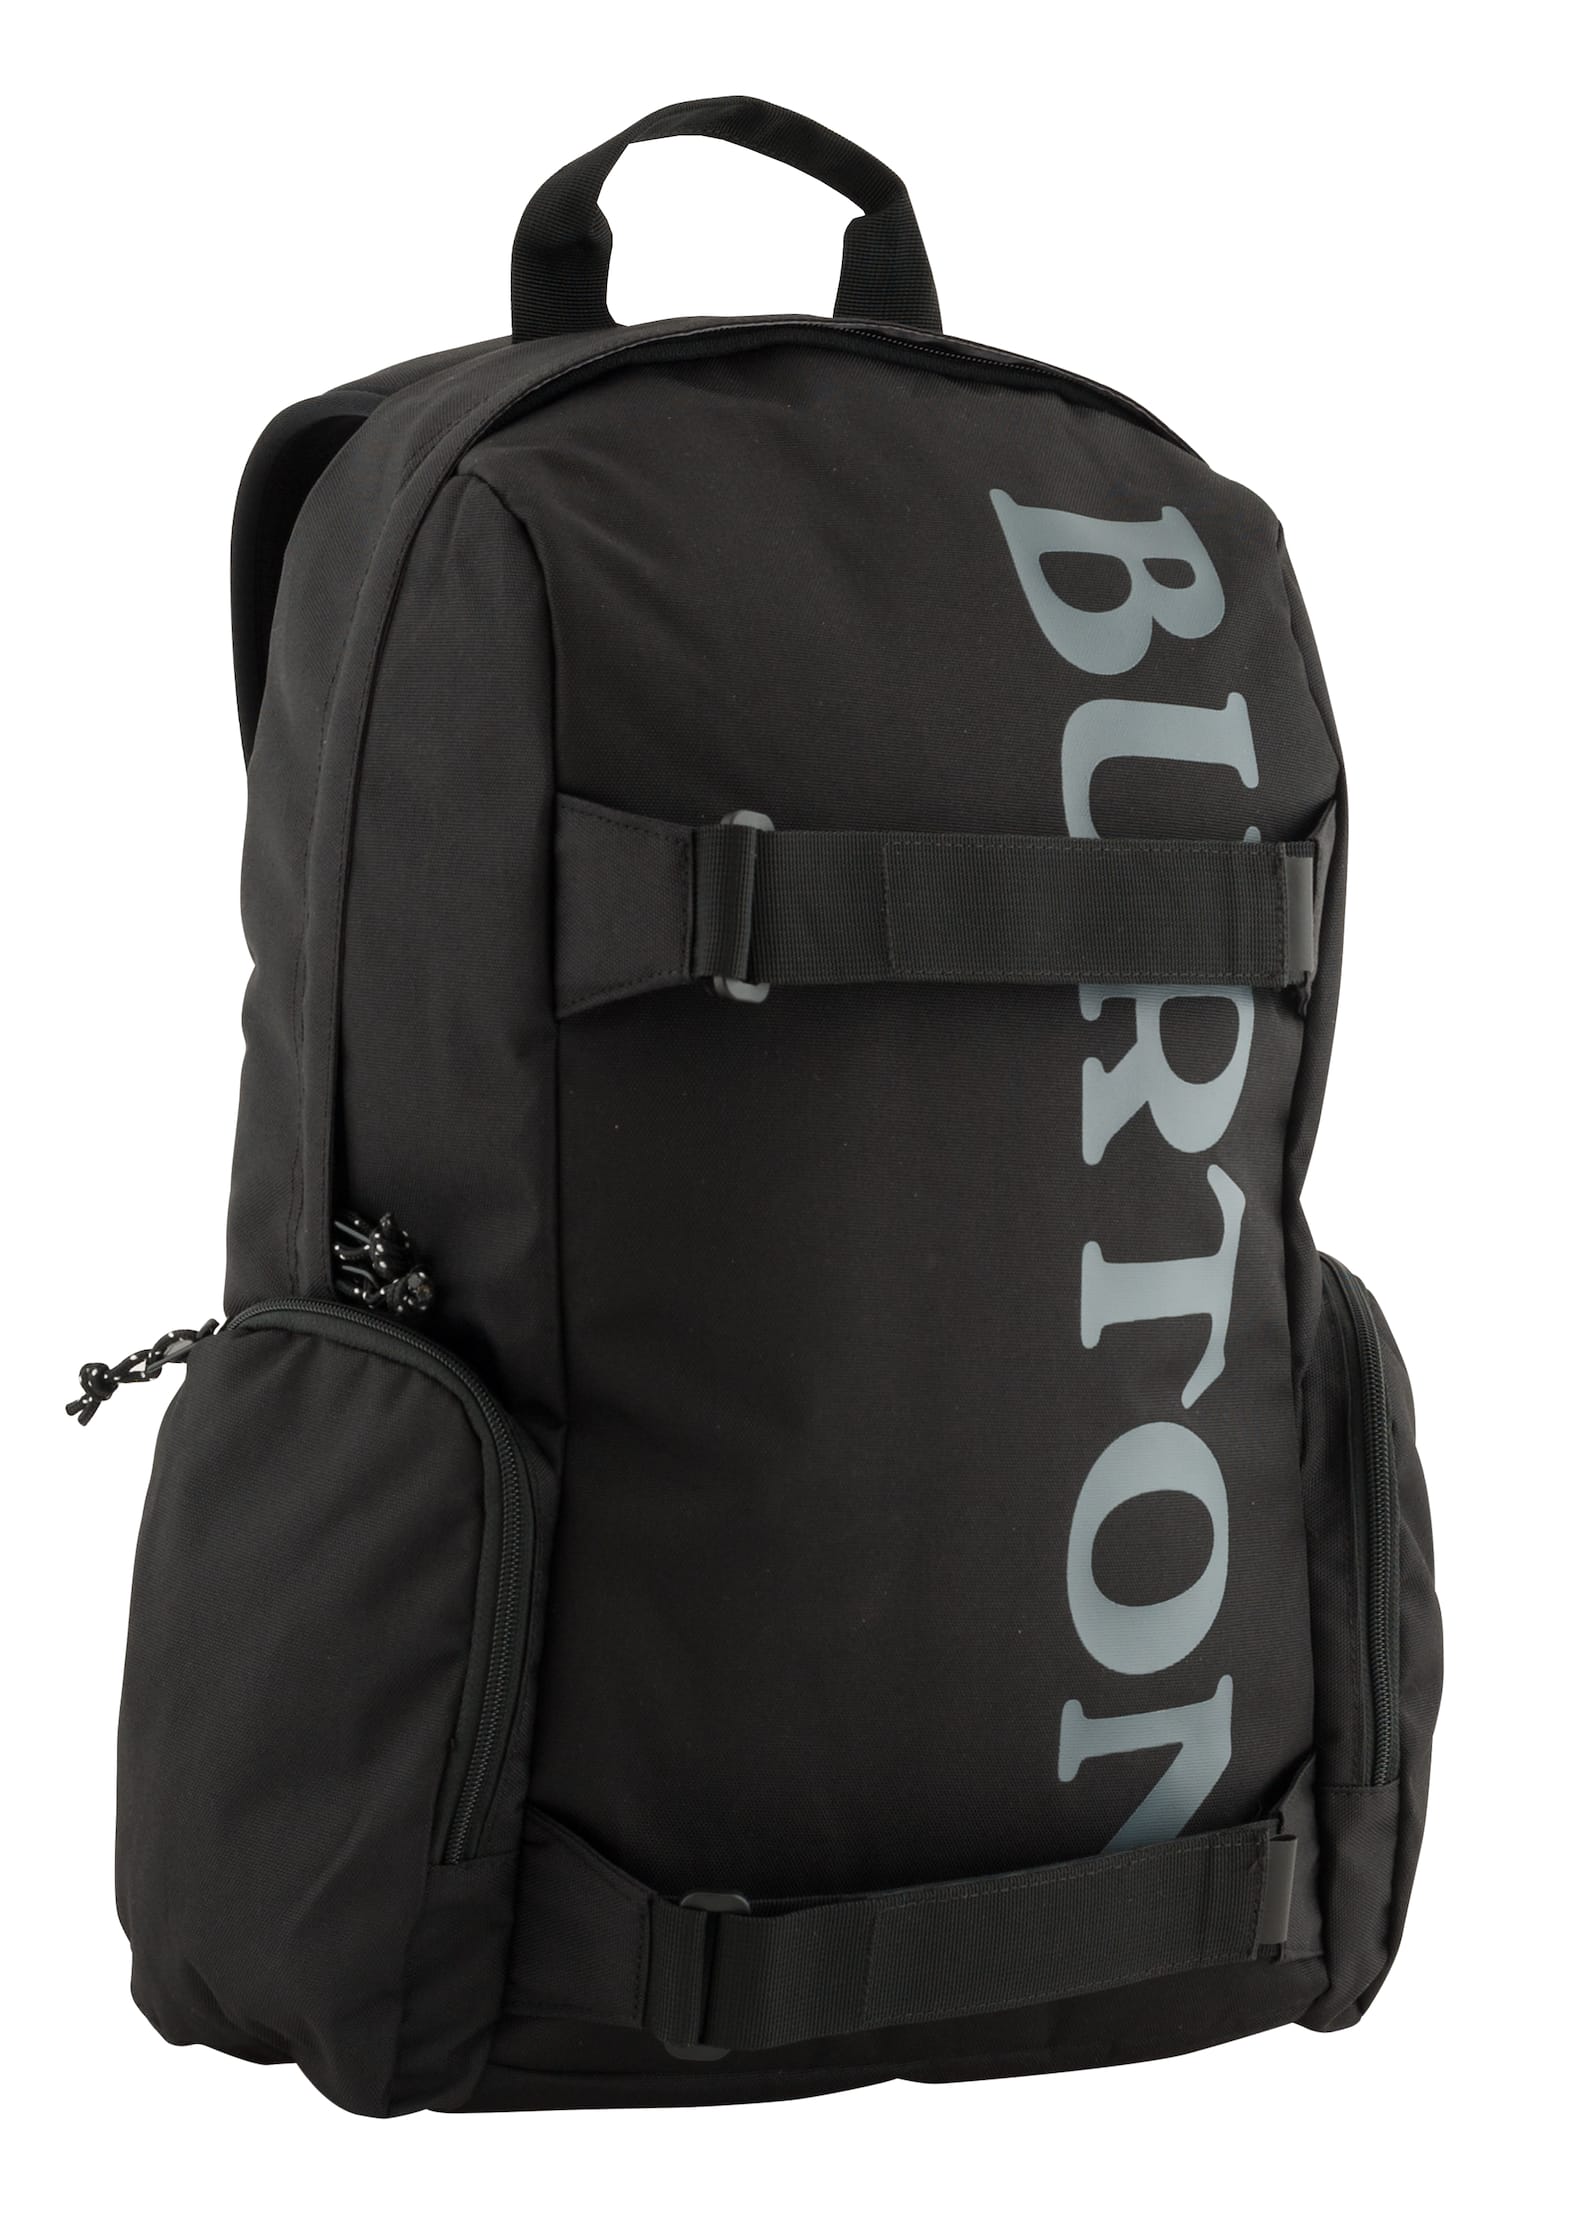 Burton Emphasis 26L Backpack | Burton.com Spring 2020 DE